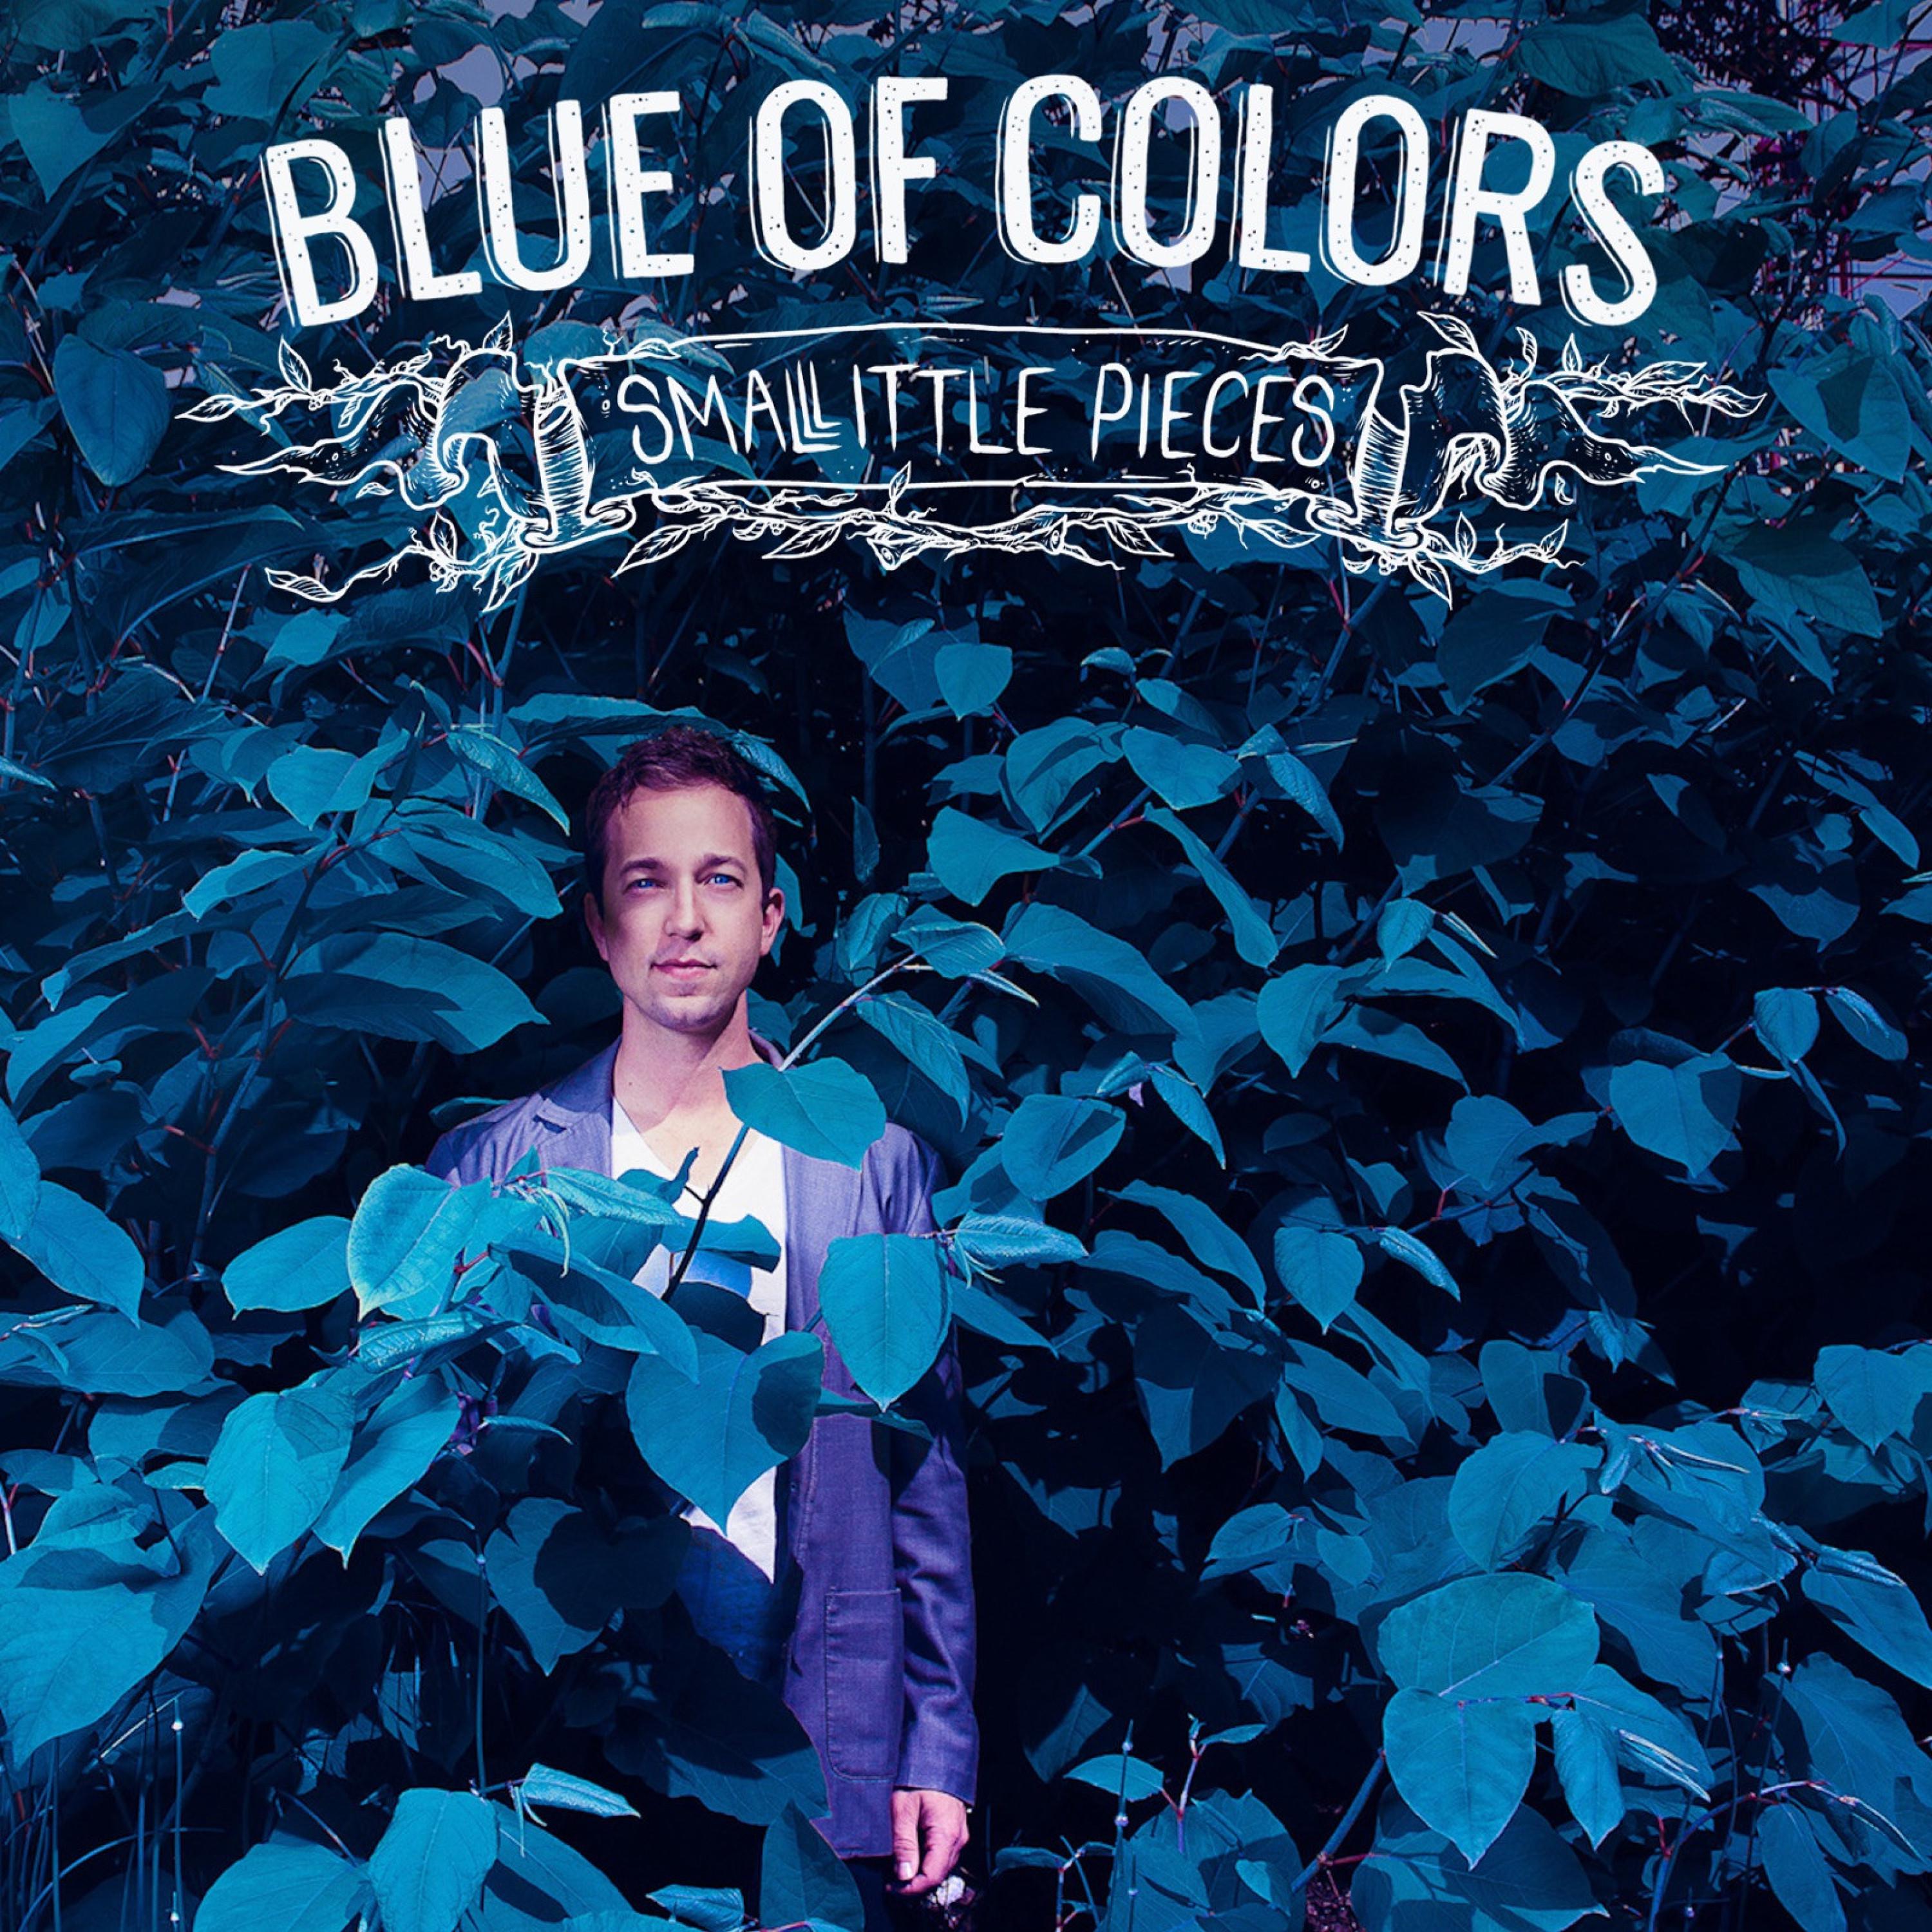 Blue of Colors - Edward Norton